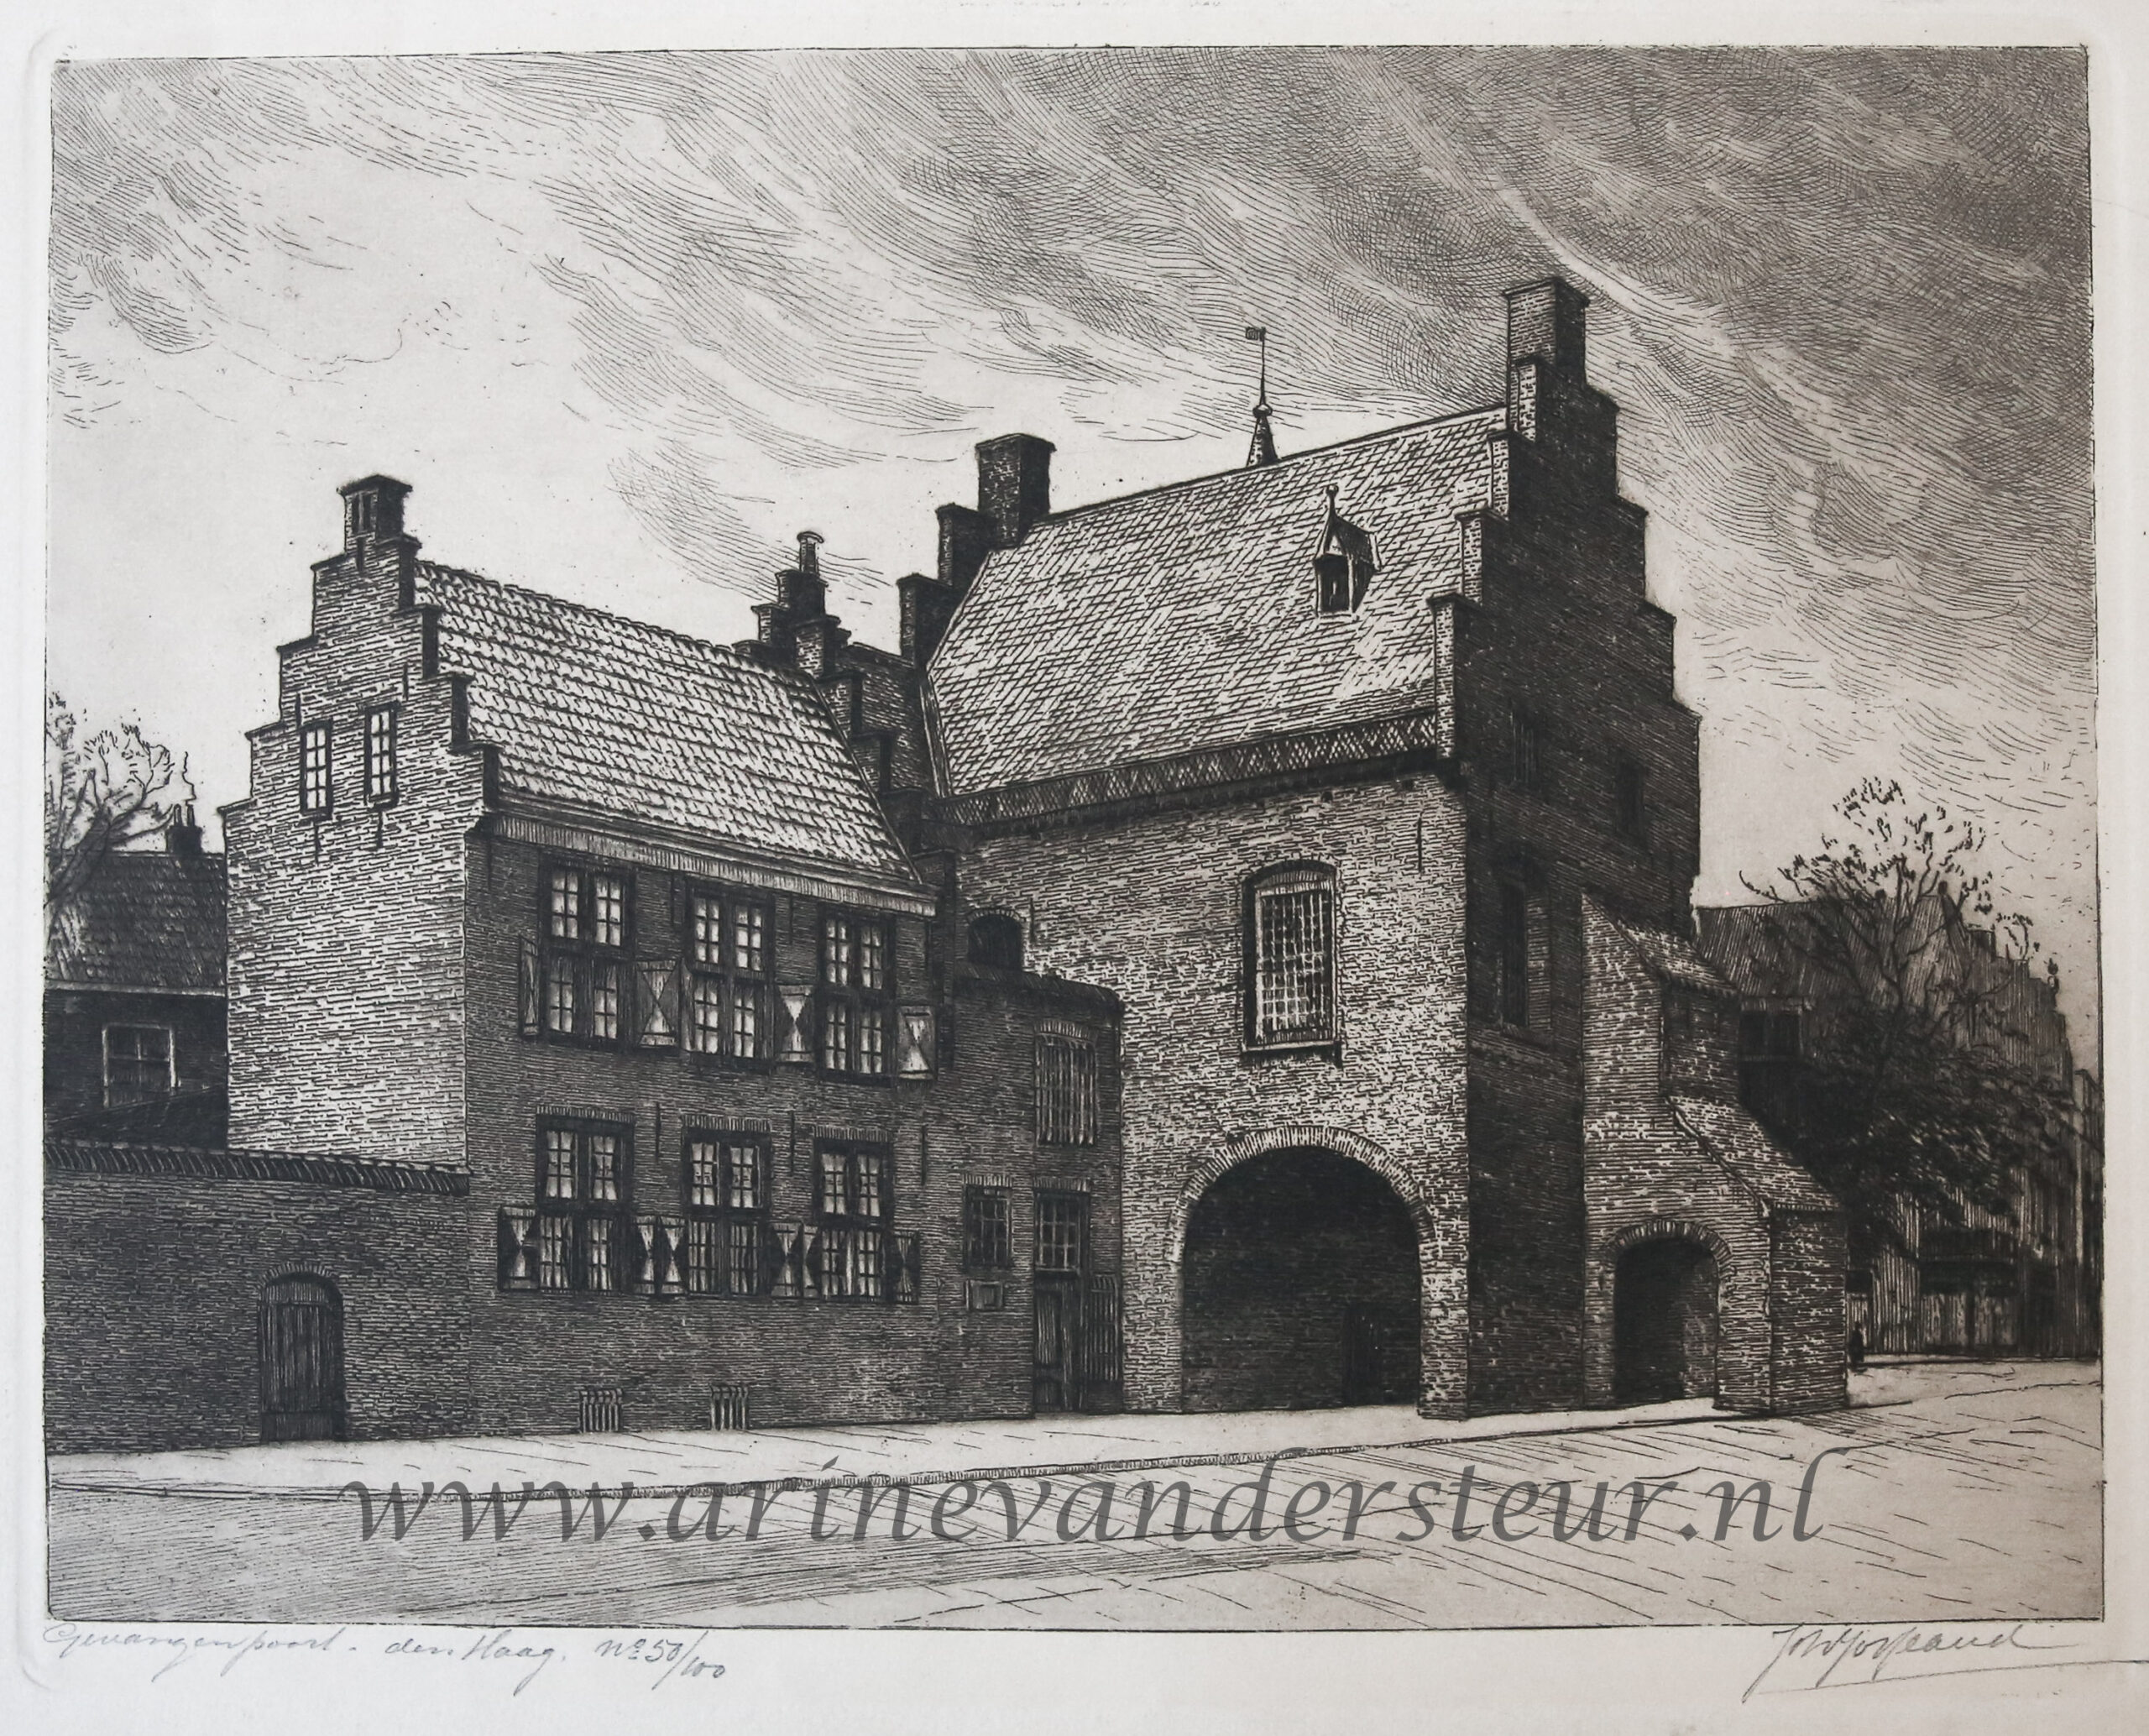  - [Modern print, etching] De Gevangenpoort in The Hague, published ca. 1950.